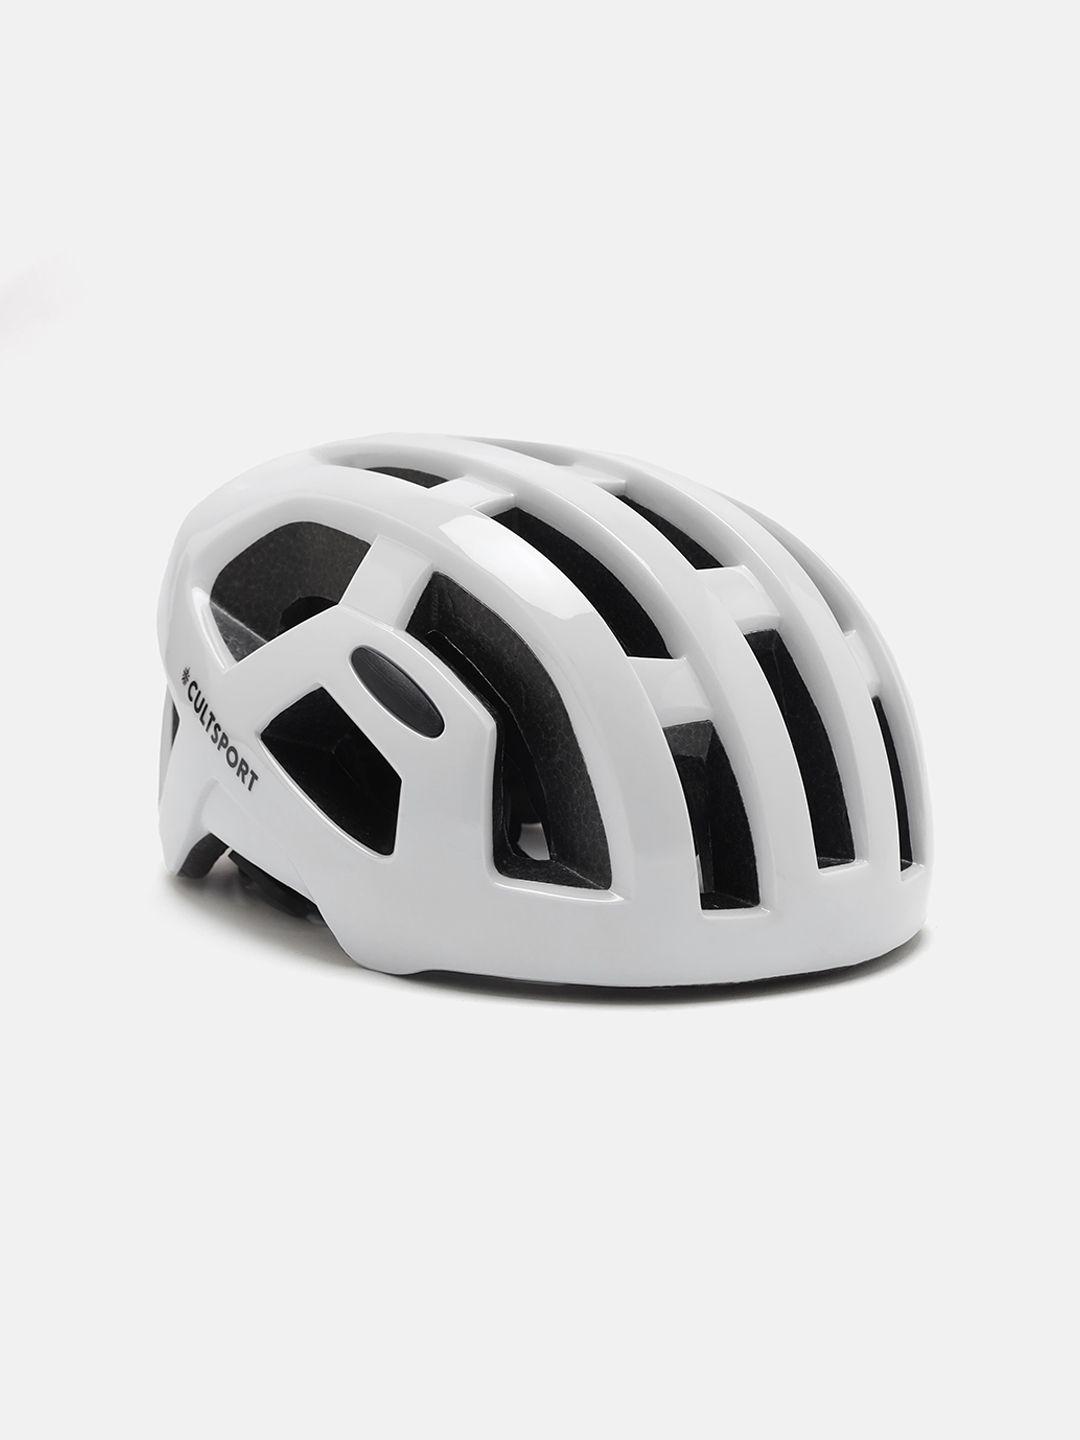 cultsport lightweight cycling helmet